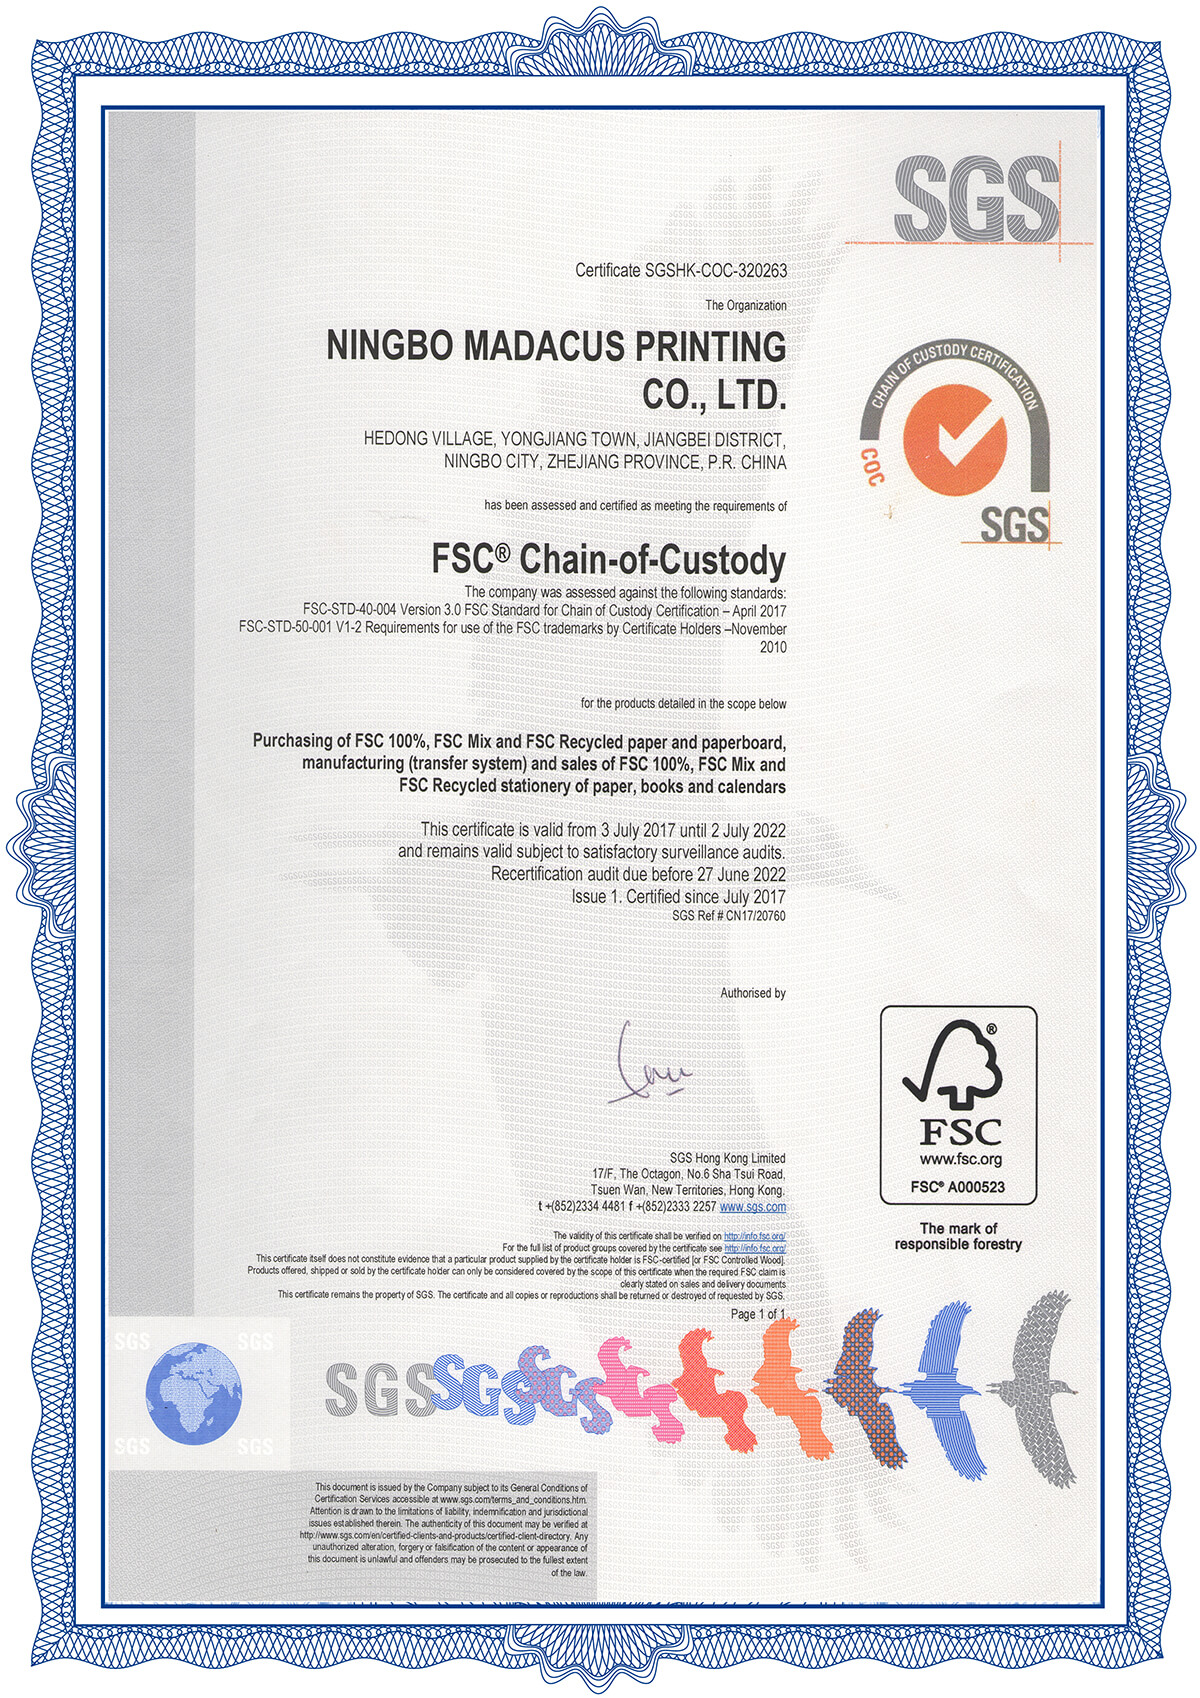 FSC certificates